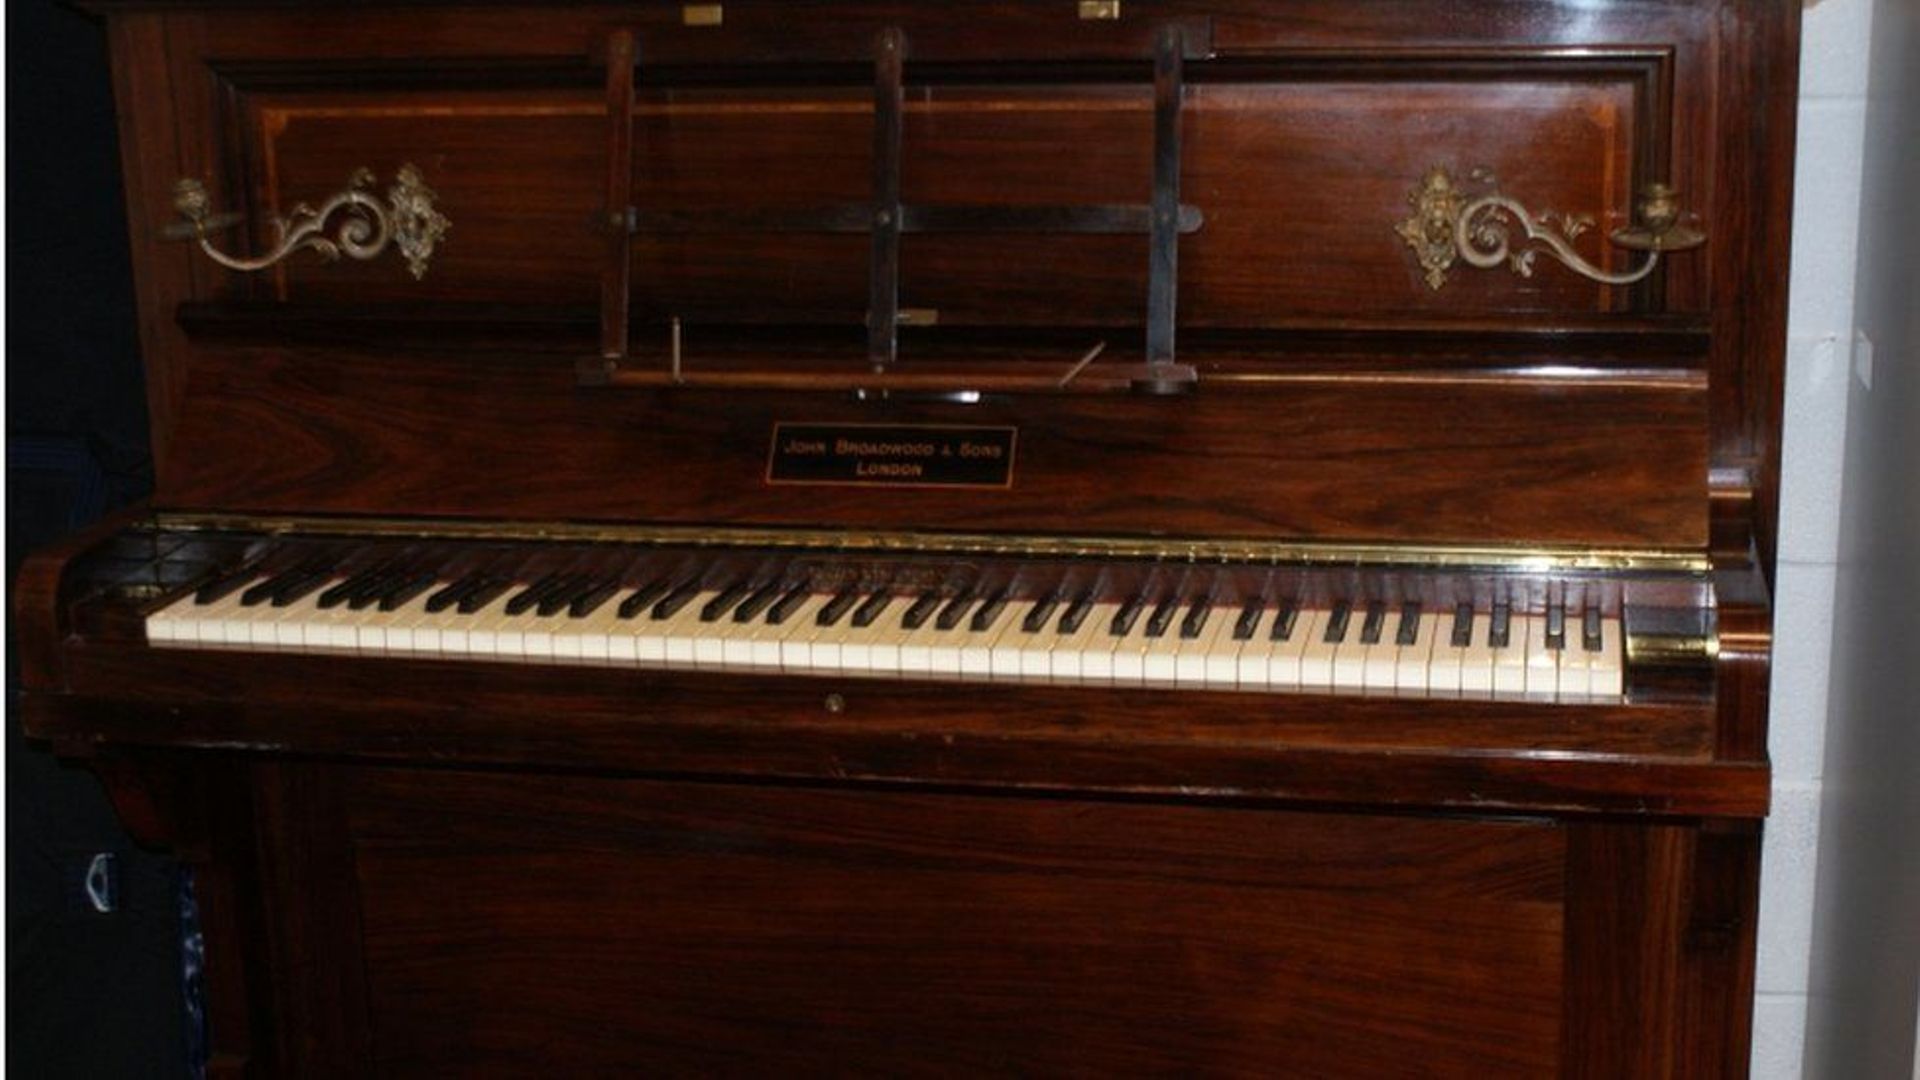 Un trésor de pièces d'or anglaises a été retrouvé dans un piano